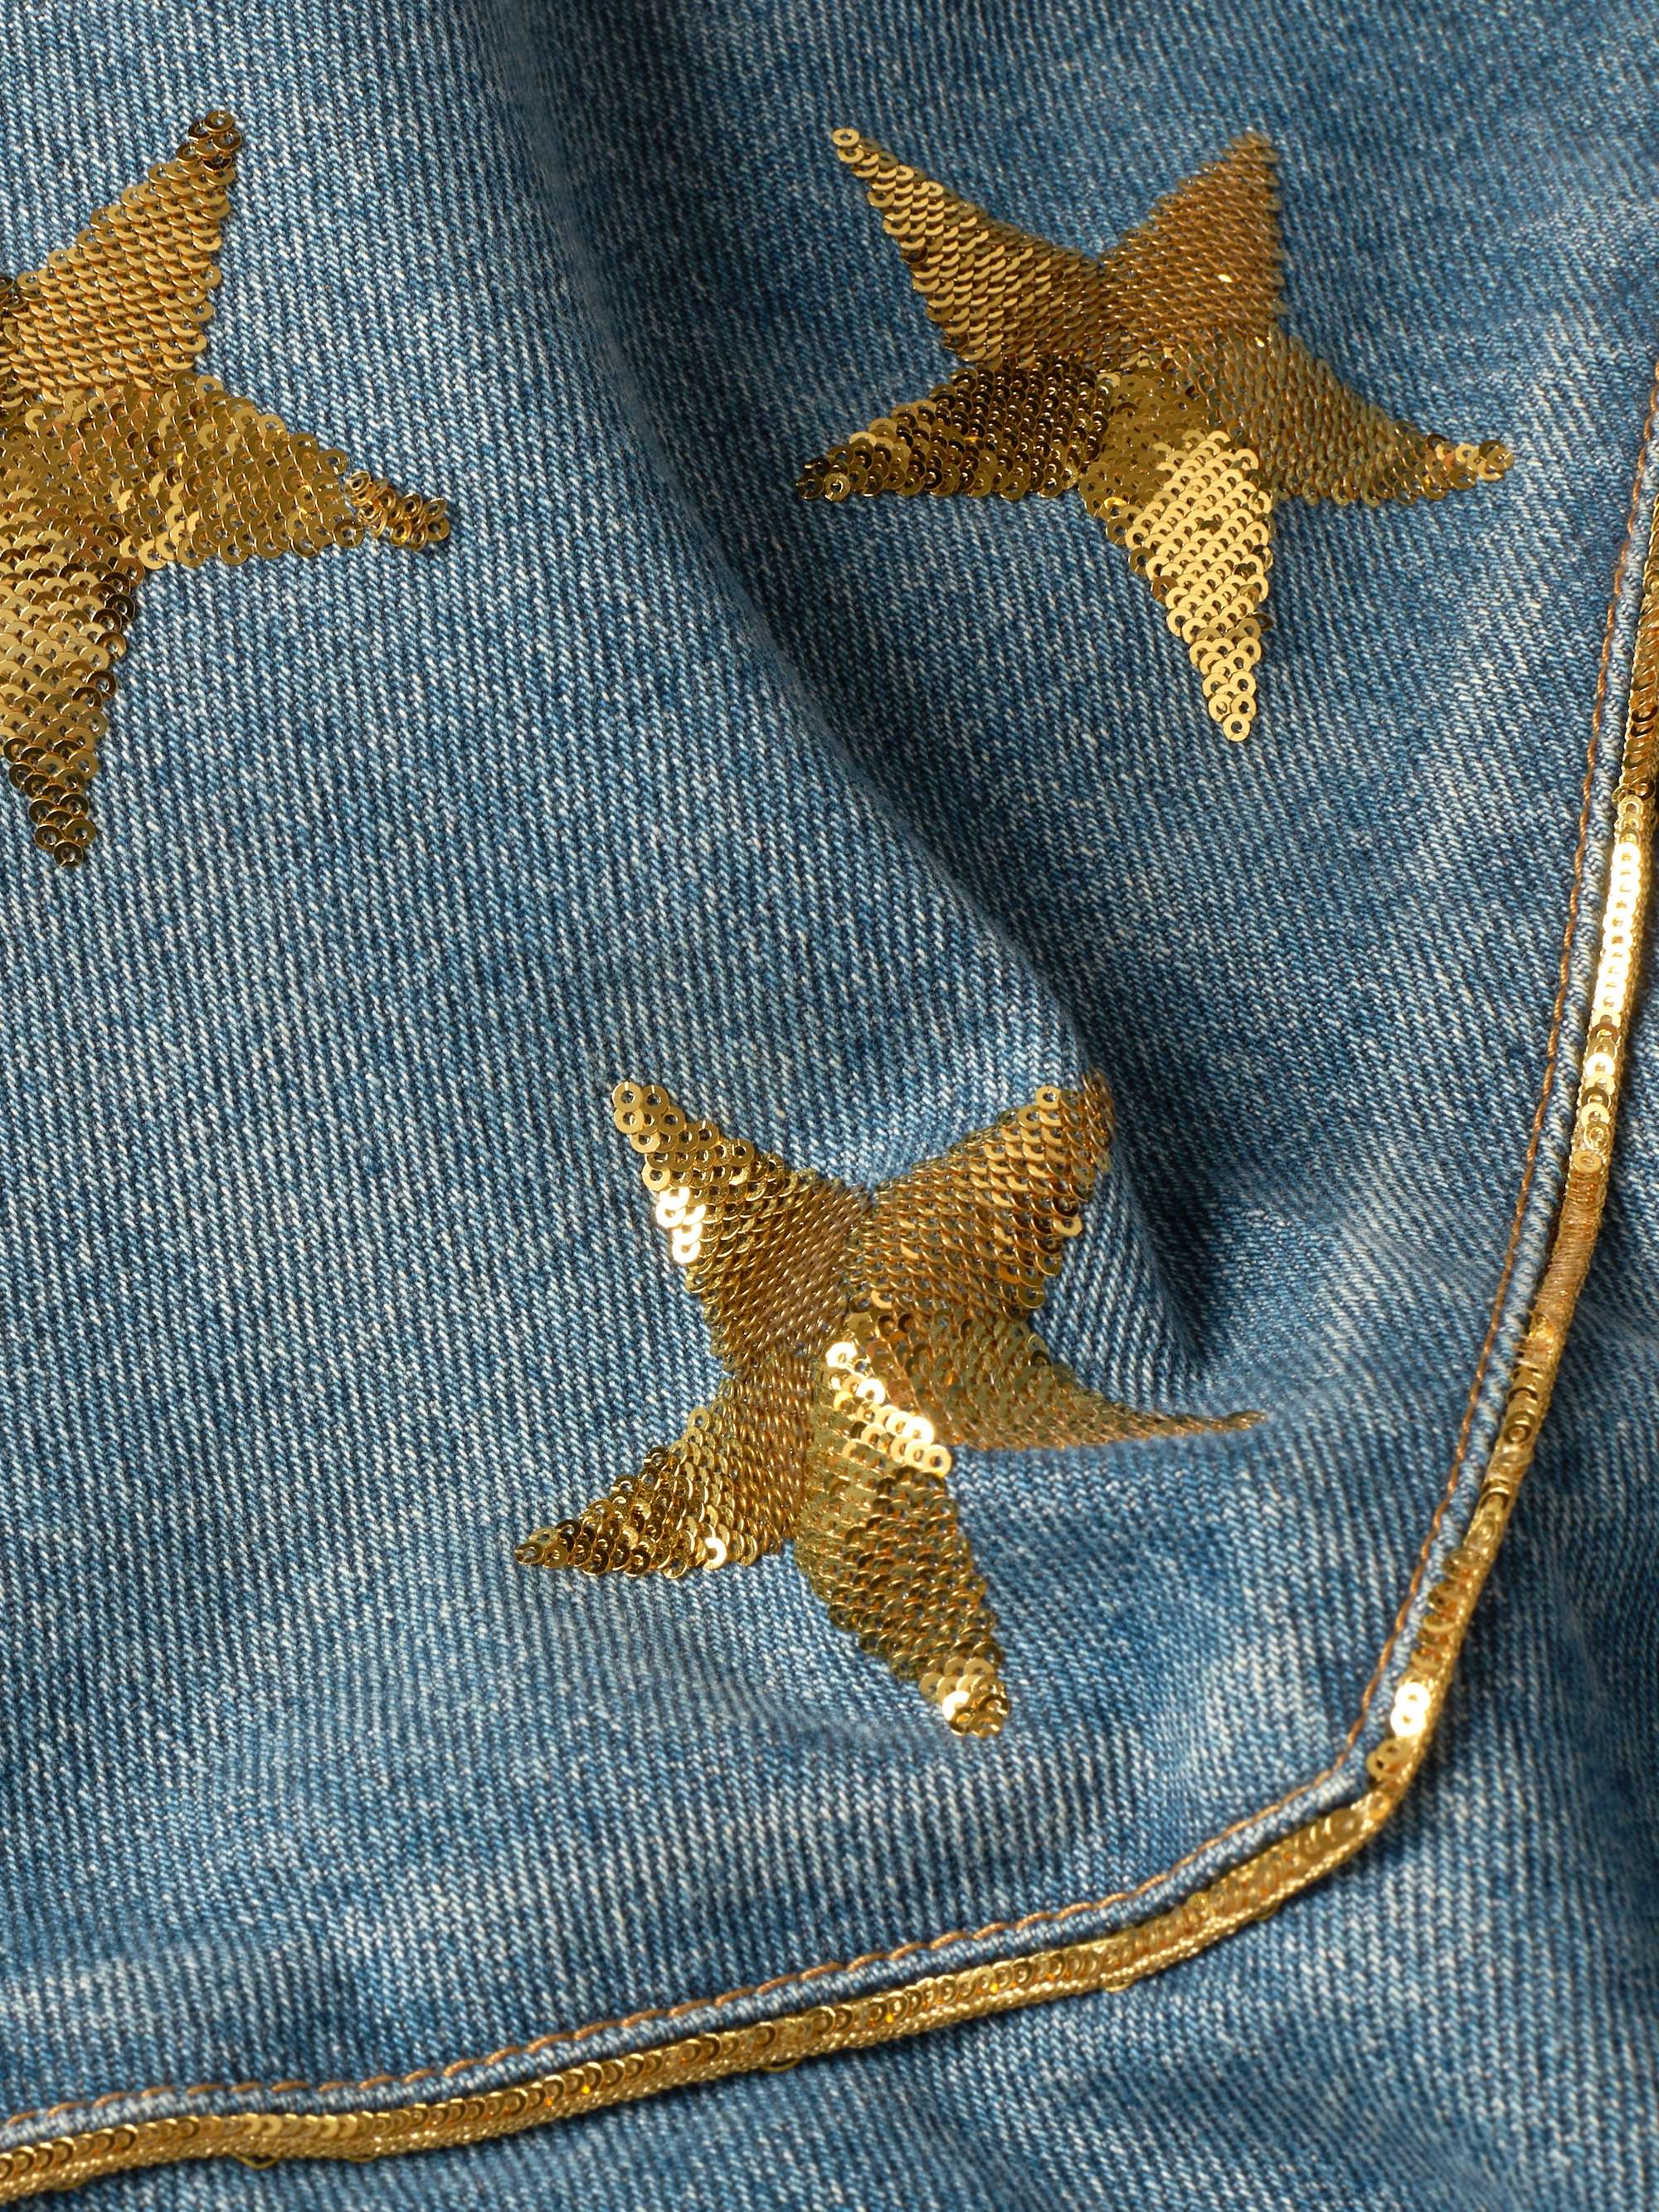 CELINE HOMME Sequin-Embellished Denim Blouson Jacket